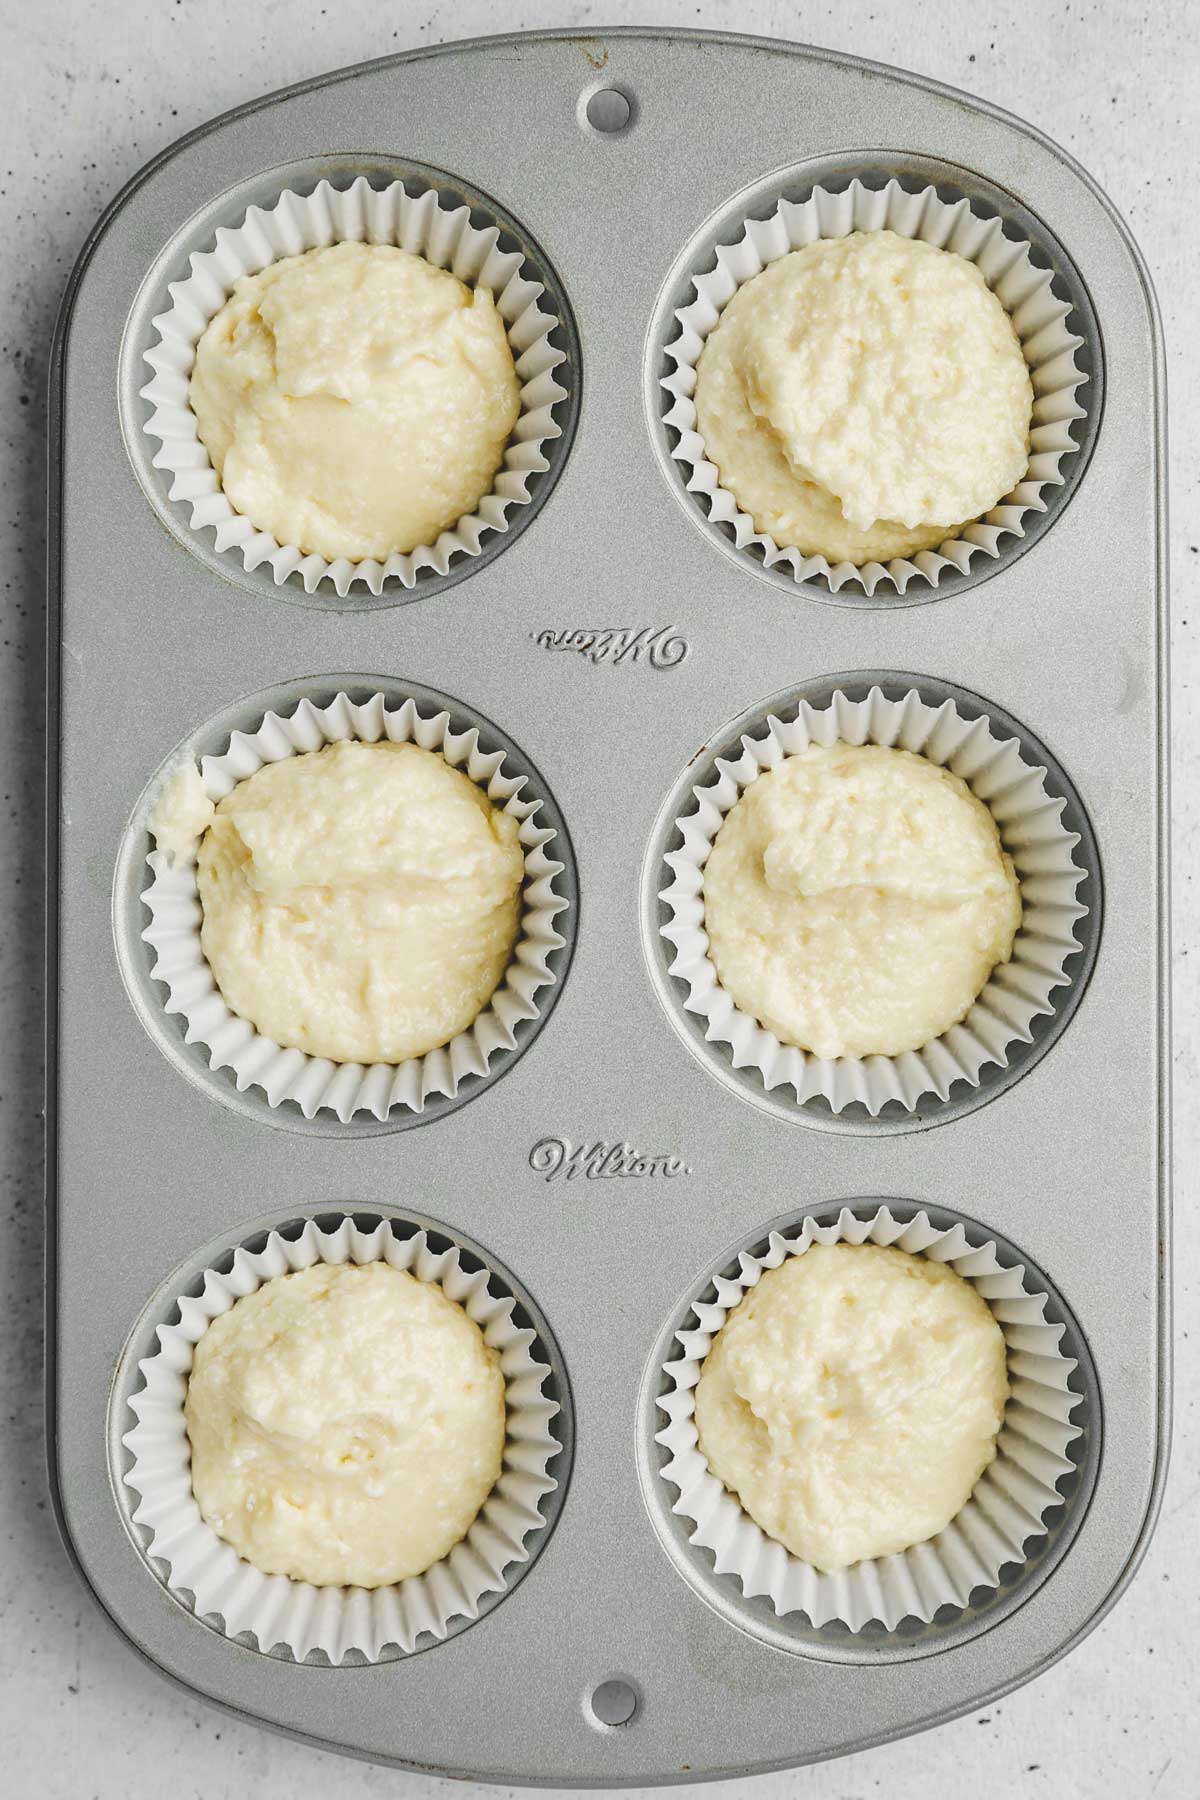 Moule à muffins avec des cupcakes avant cuisson